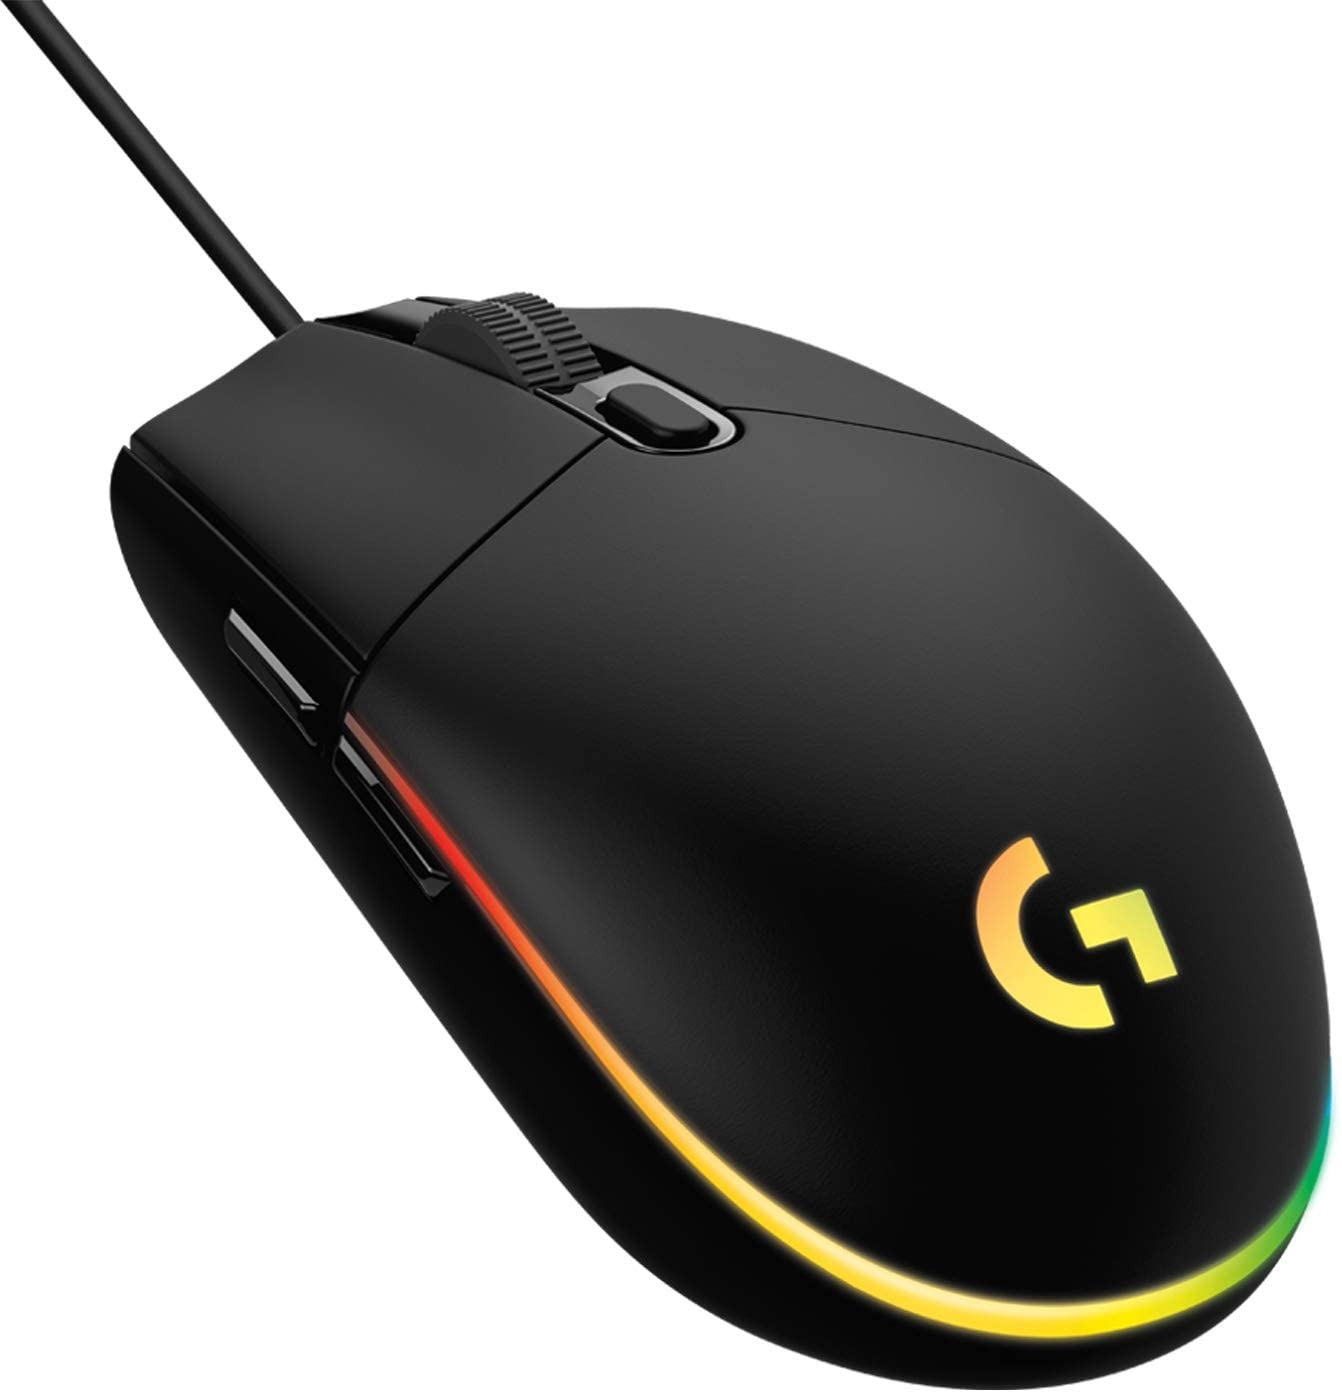 51700円 毎週更新 ゲーミングpc mouse マウス